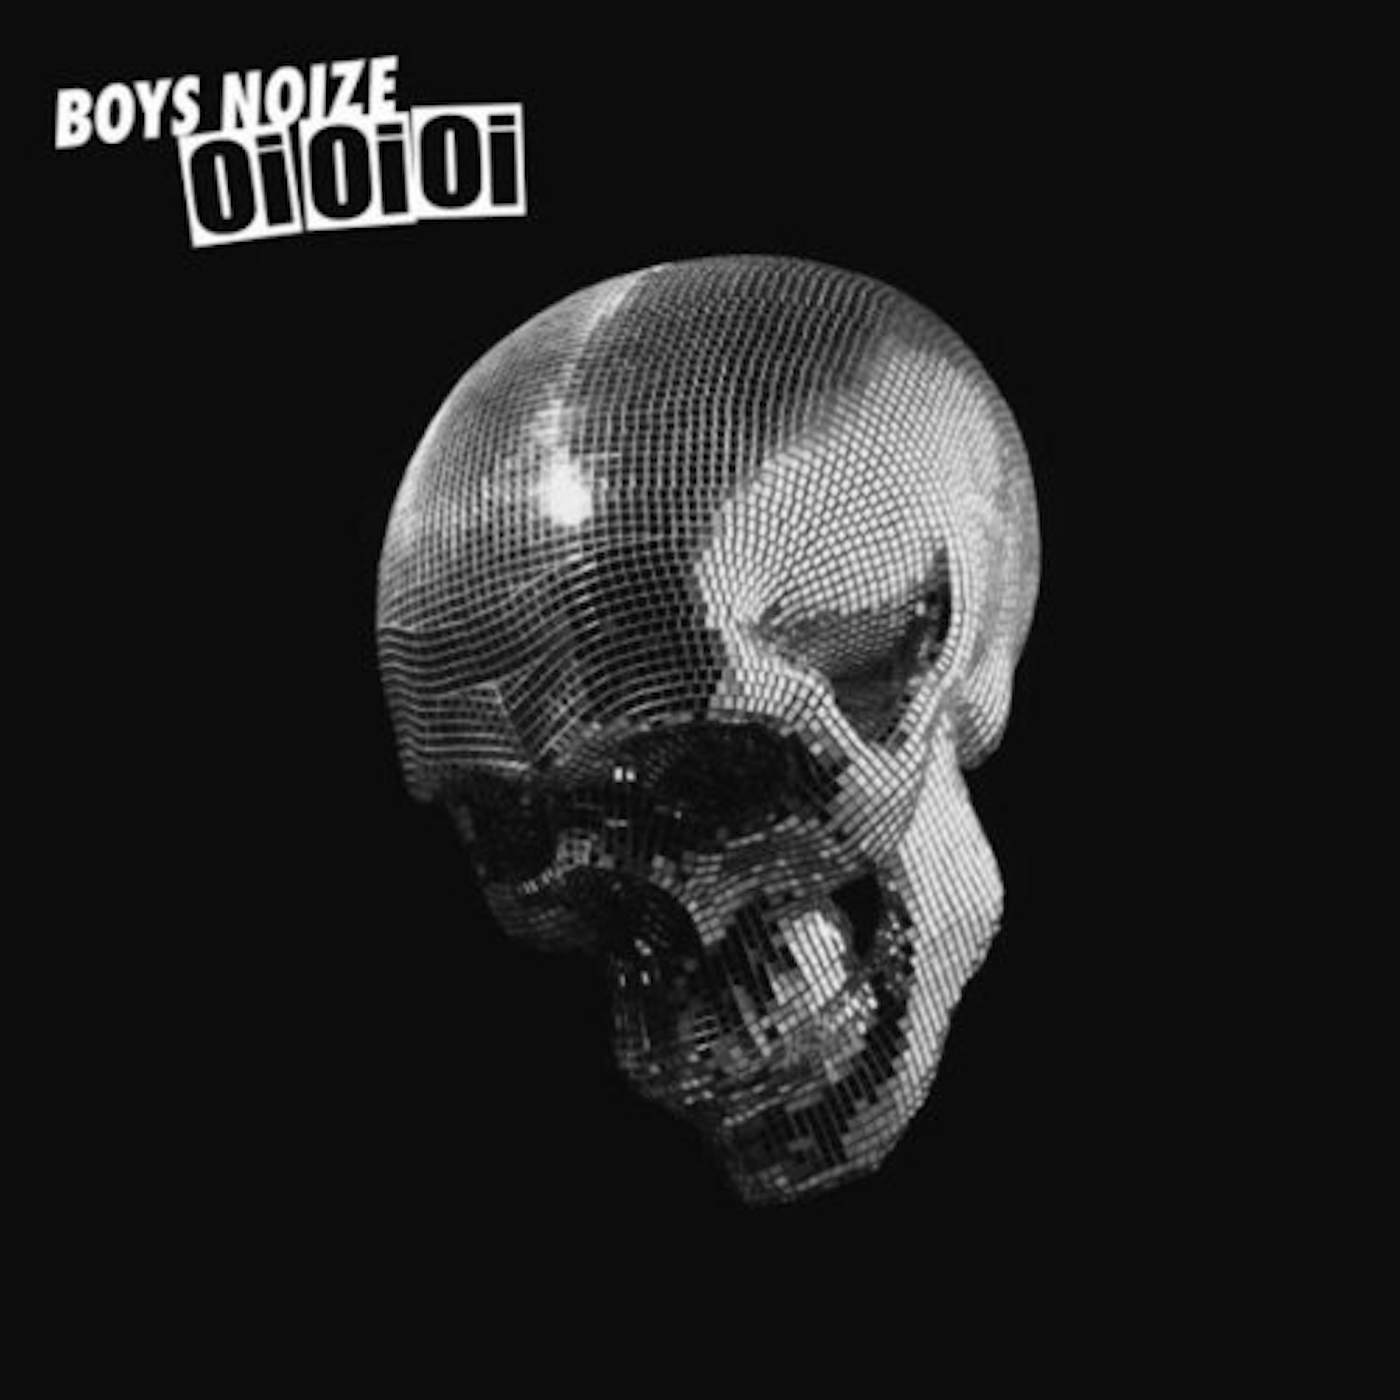 Boys Noize OI OI OI Vinyl Record